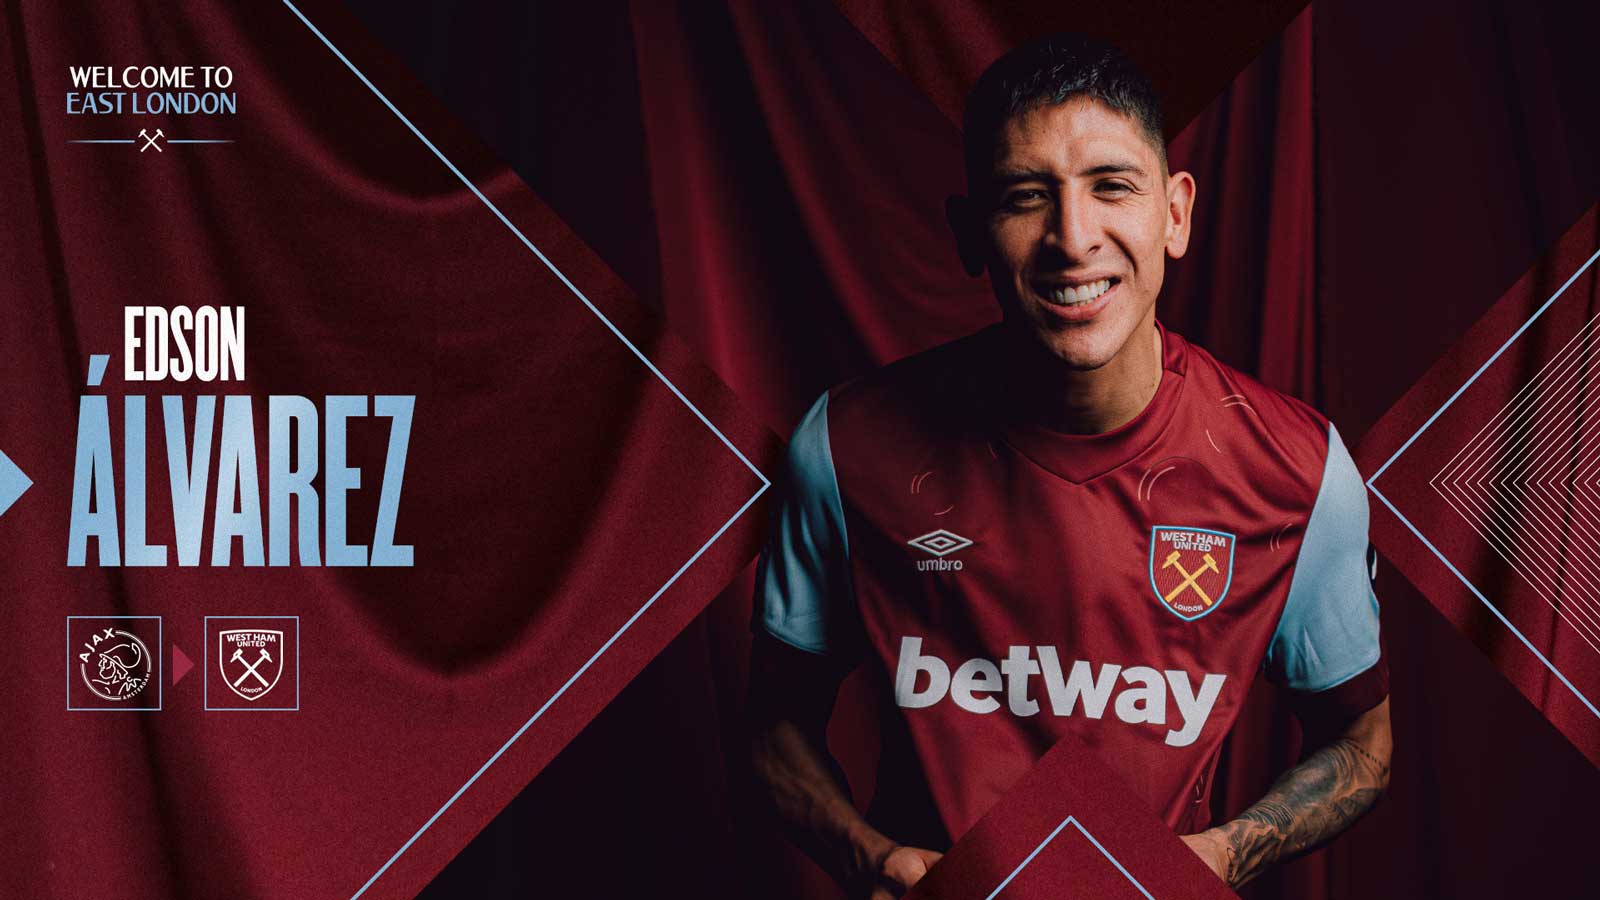 West Ham United sign Edson Álvarez